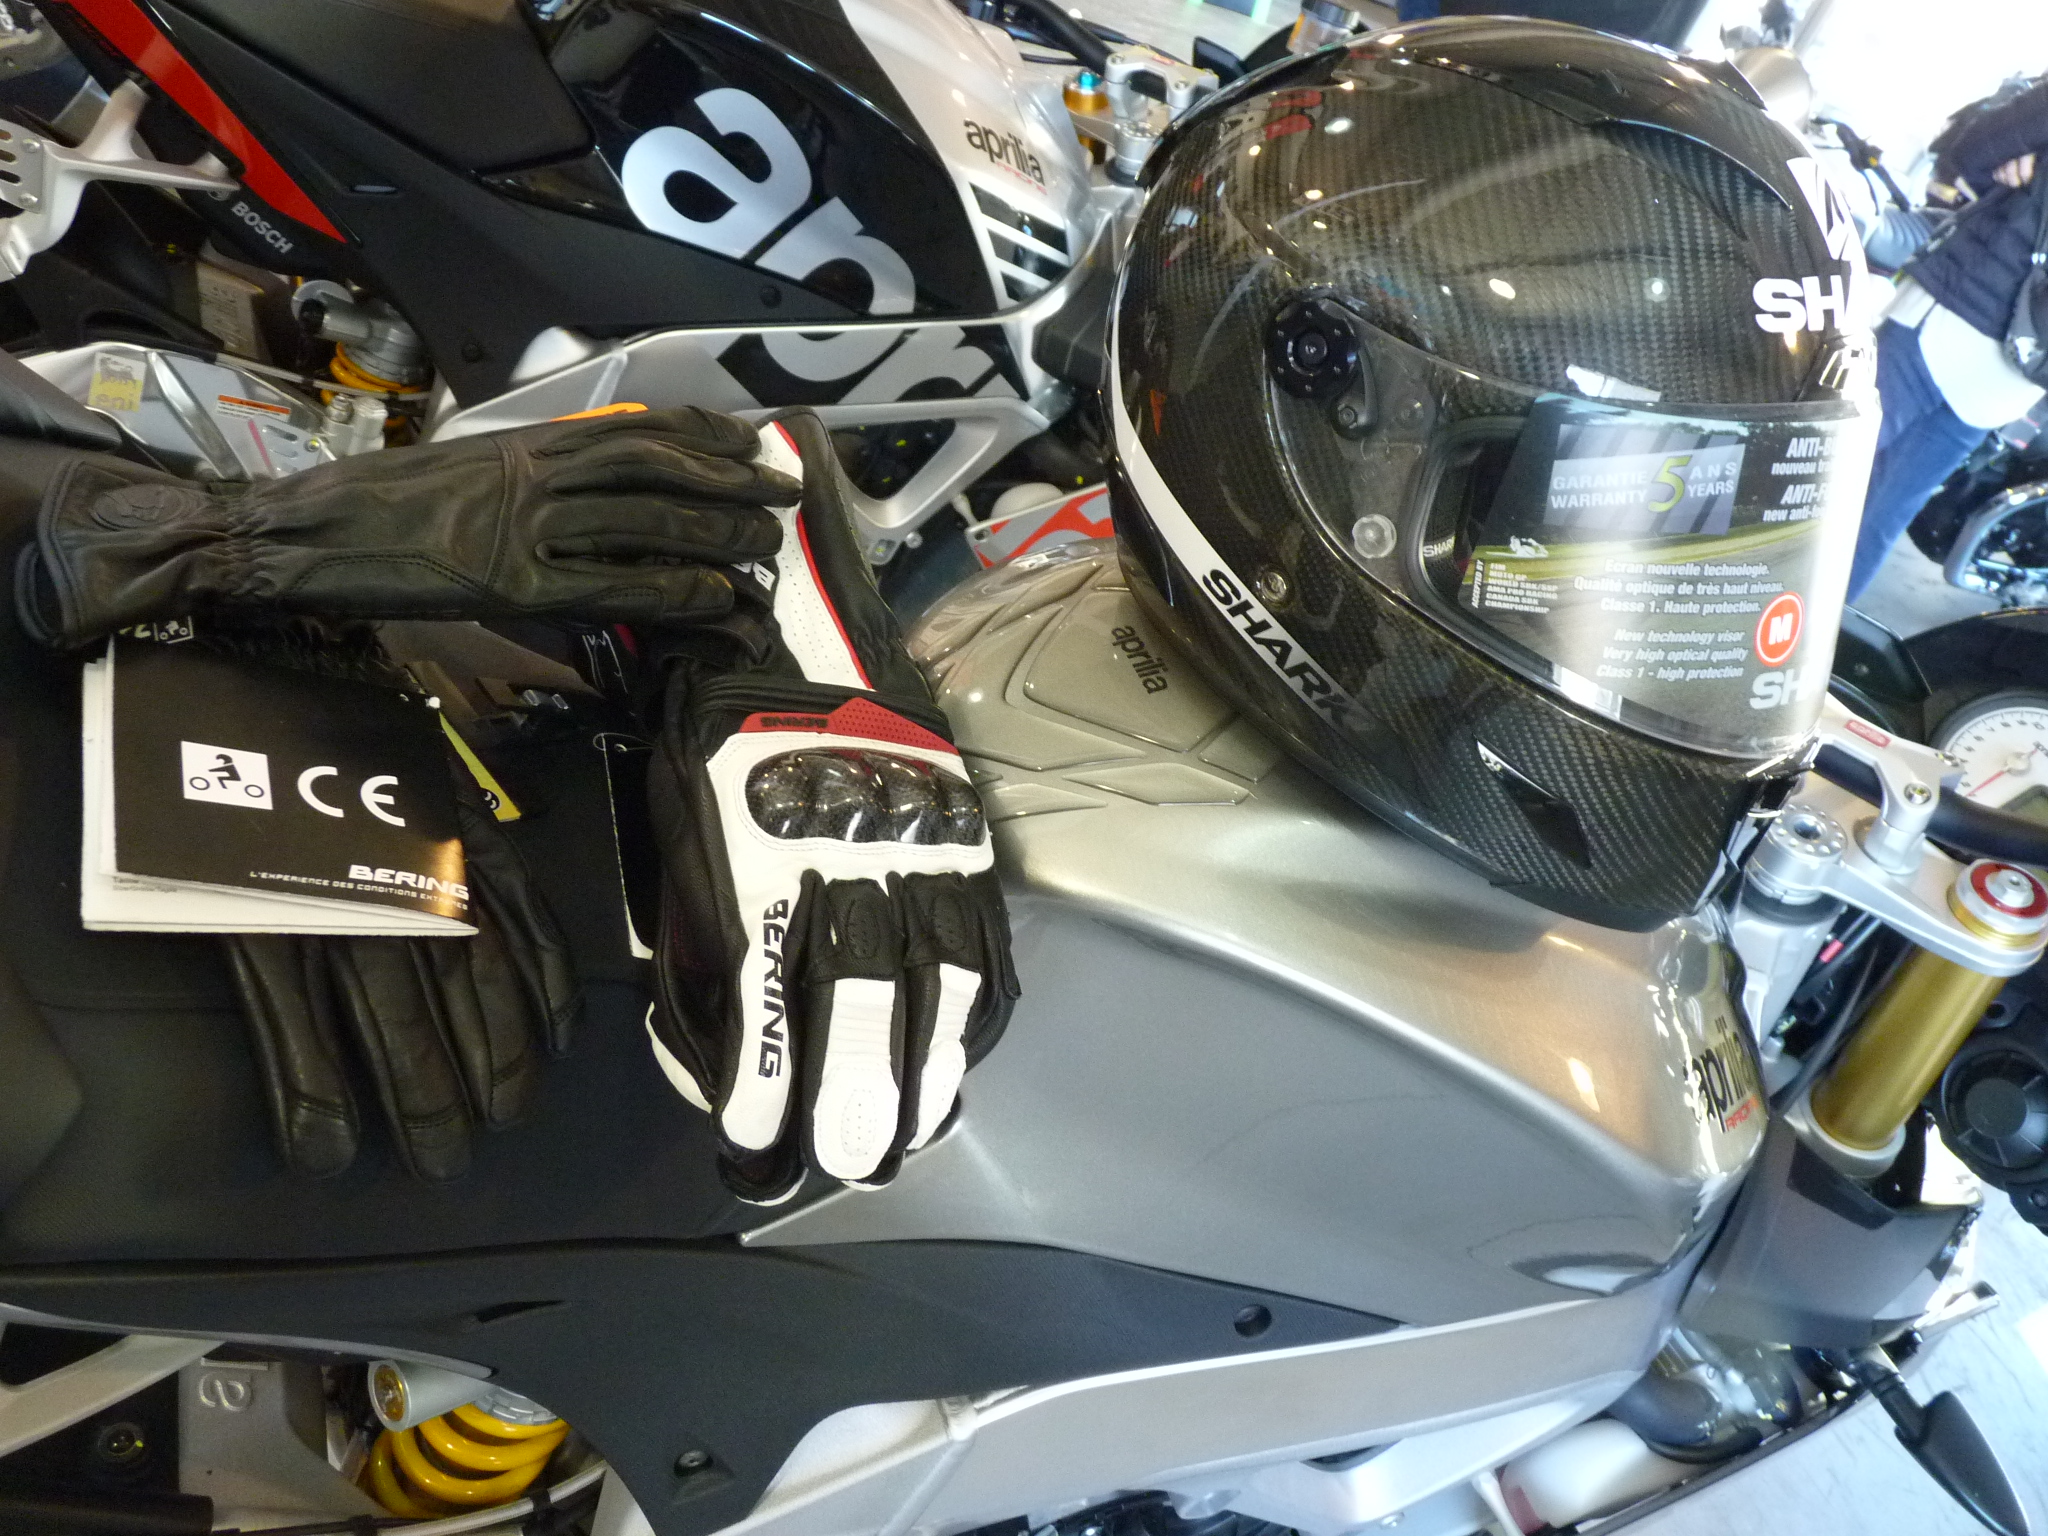 A compter du dimanche 20 novembre les gants (homologués) obligatoires pour motos et scooters